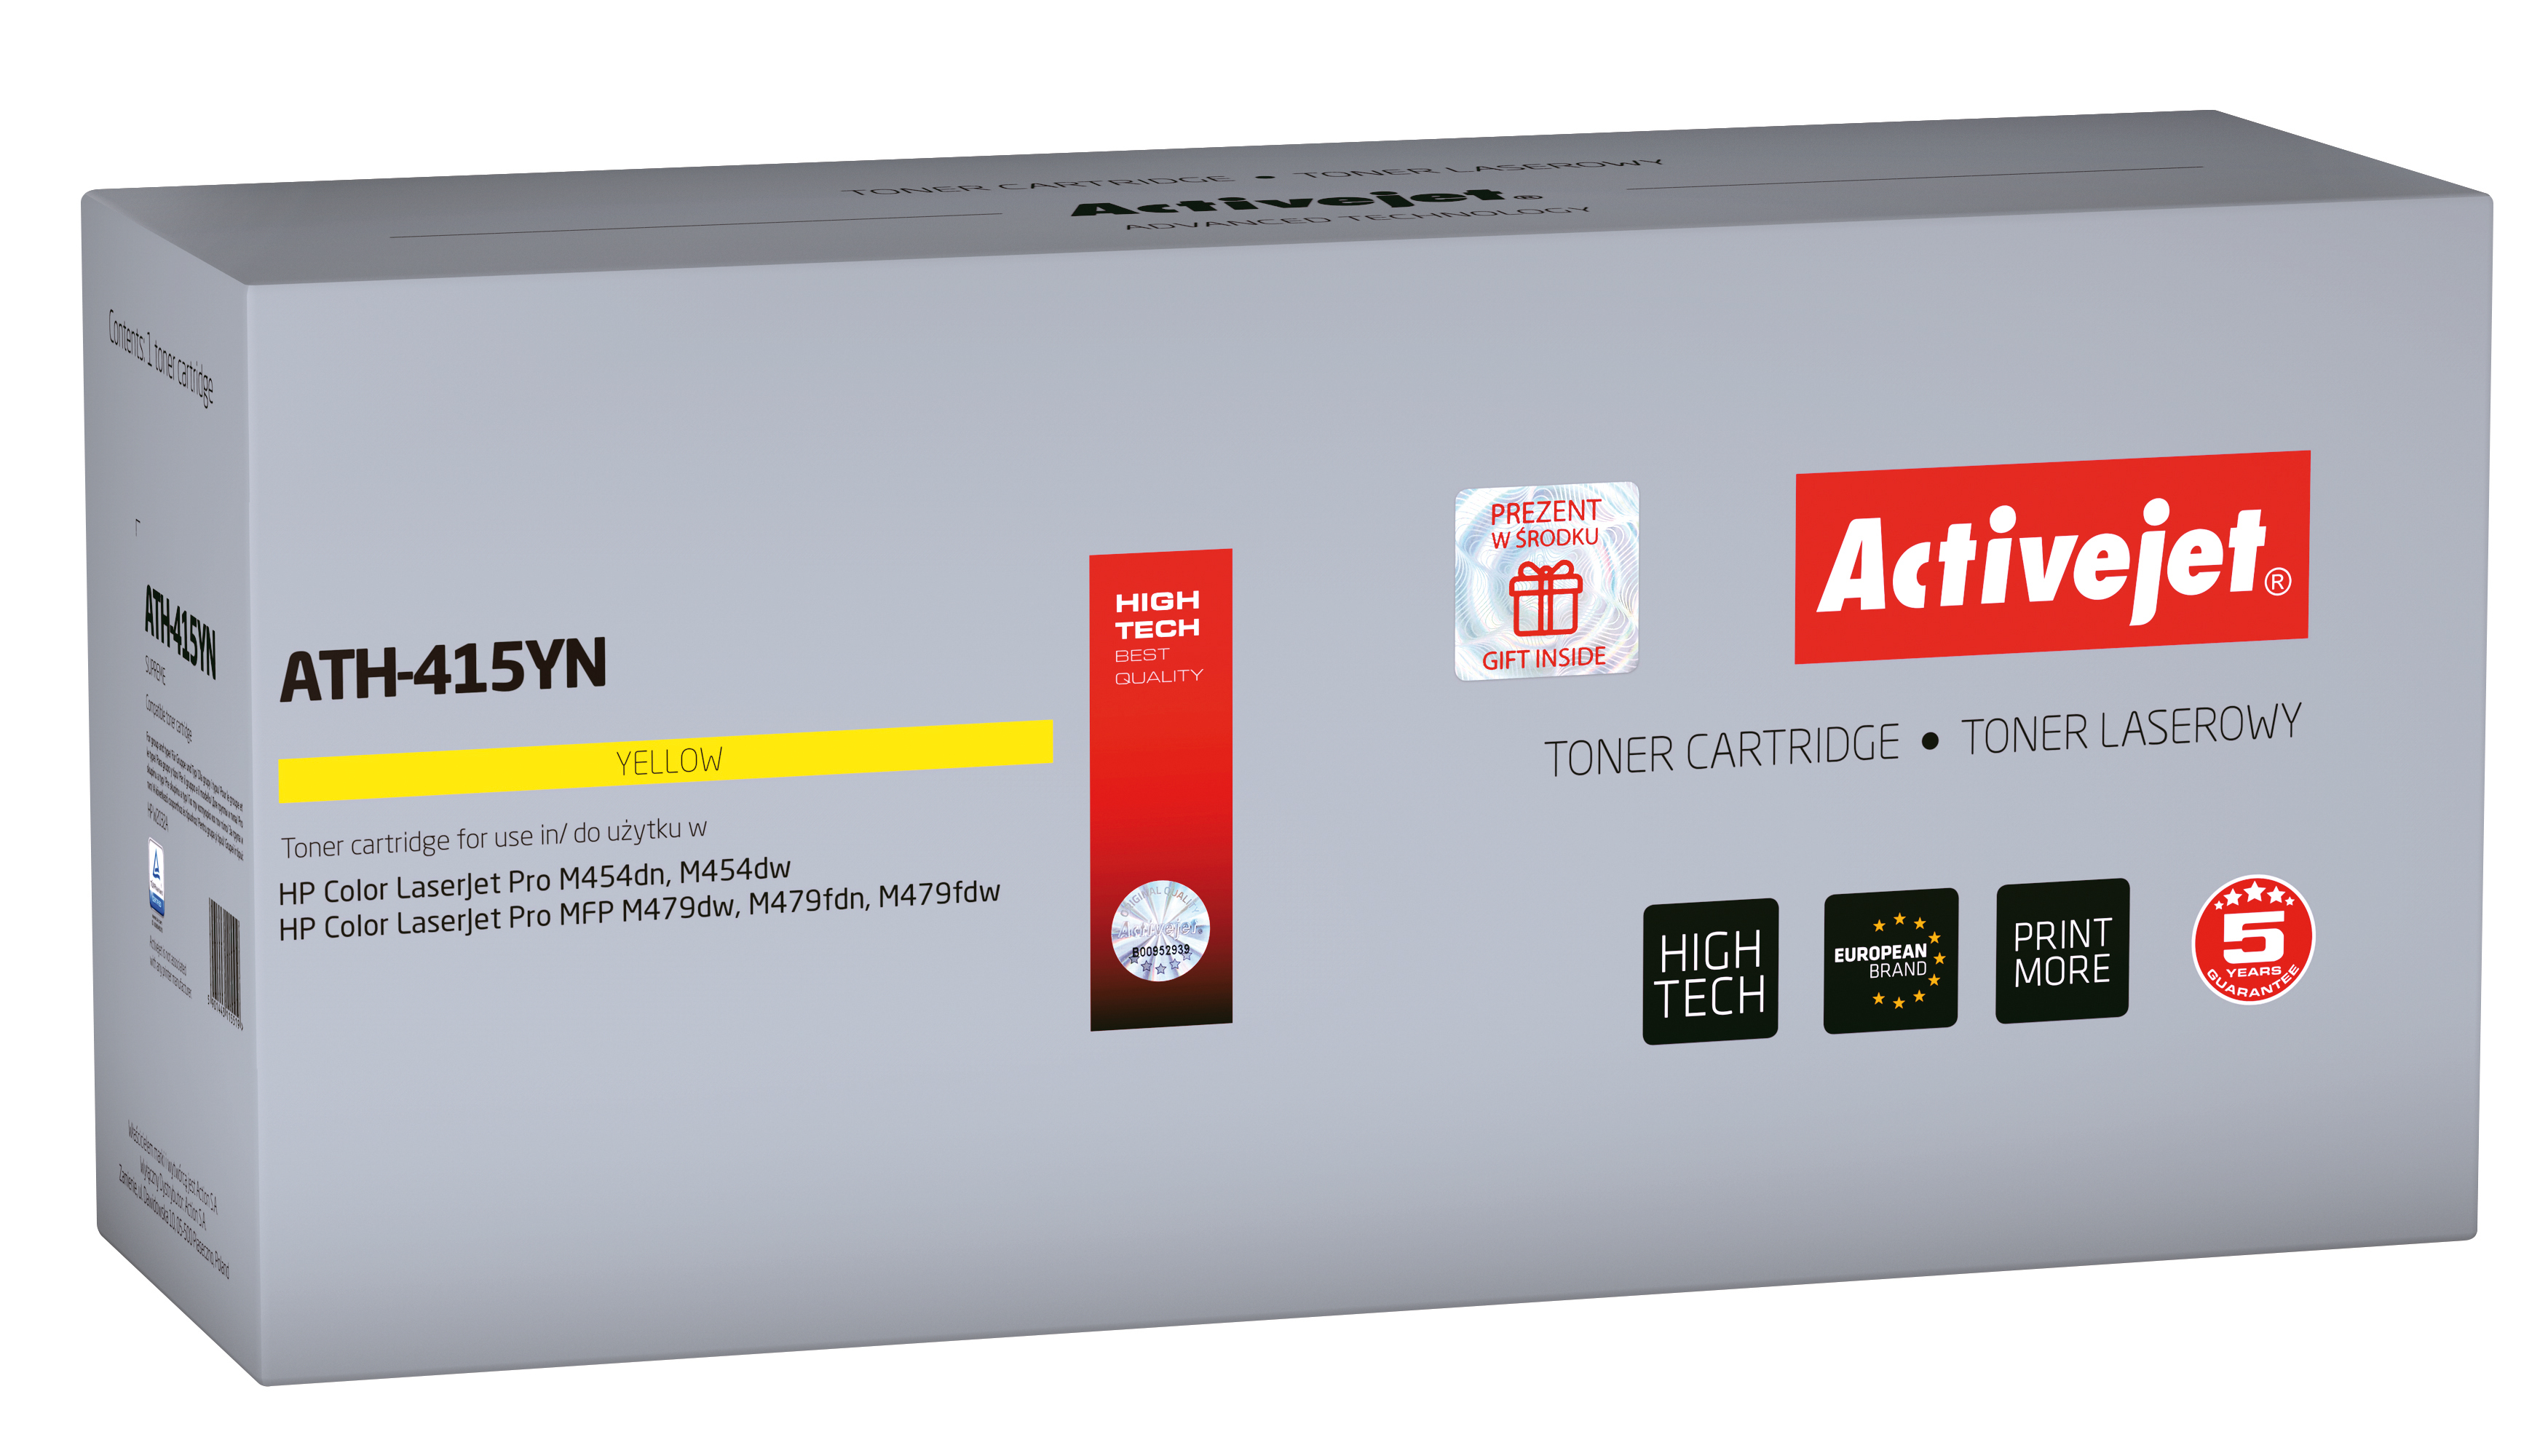 Toner Activejet ATH-415YN do drukarki HP; Zamiennik HP 415A W2032A; Supreme; 2100 stron; żółty - Brak Chipa